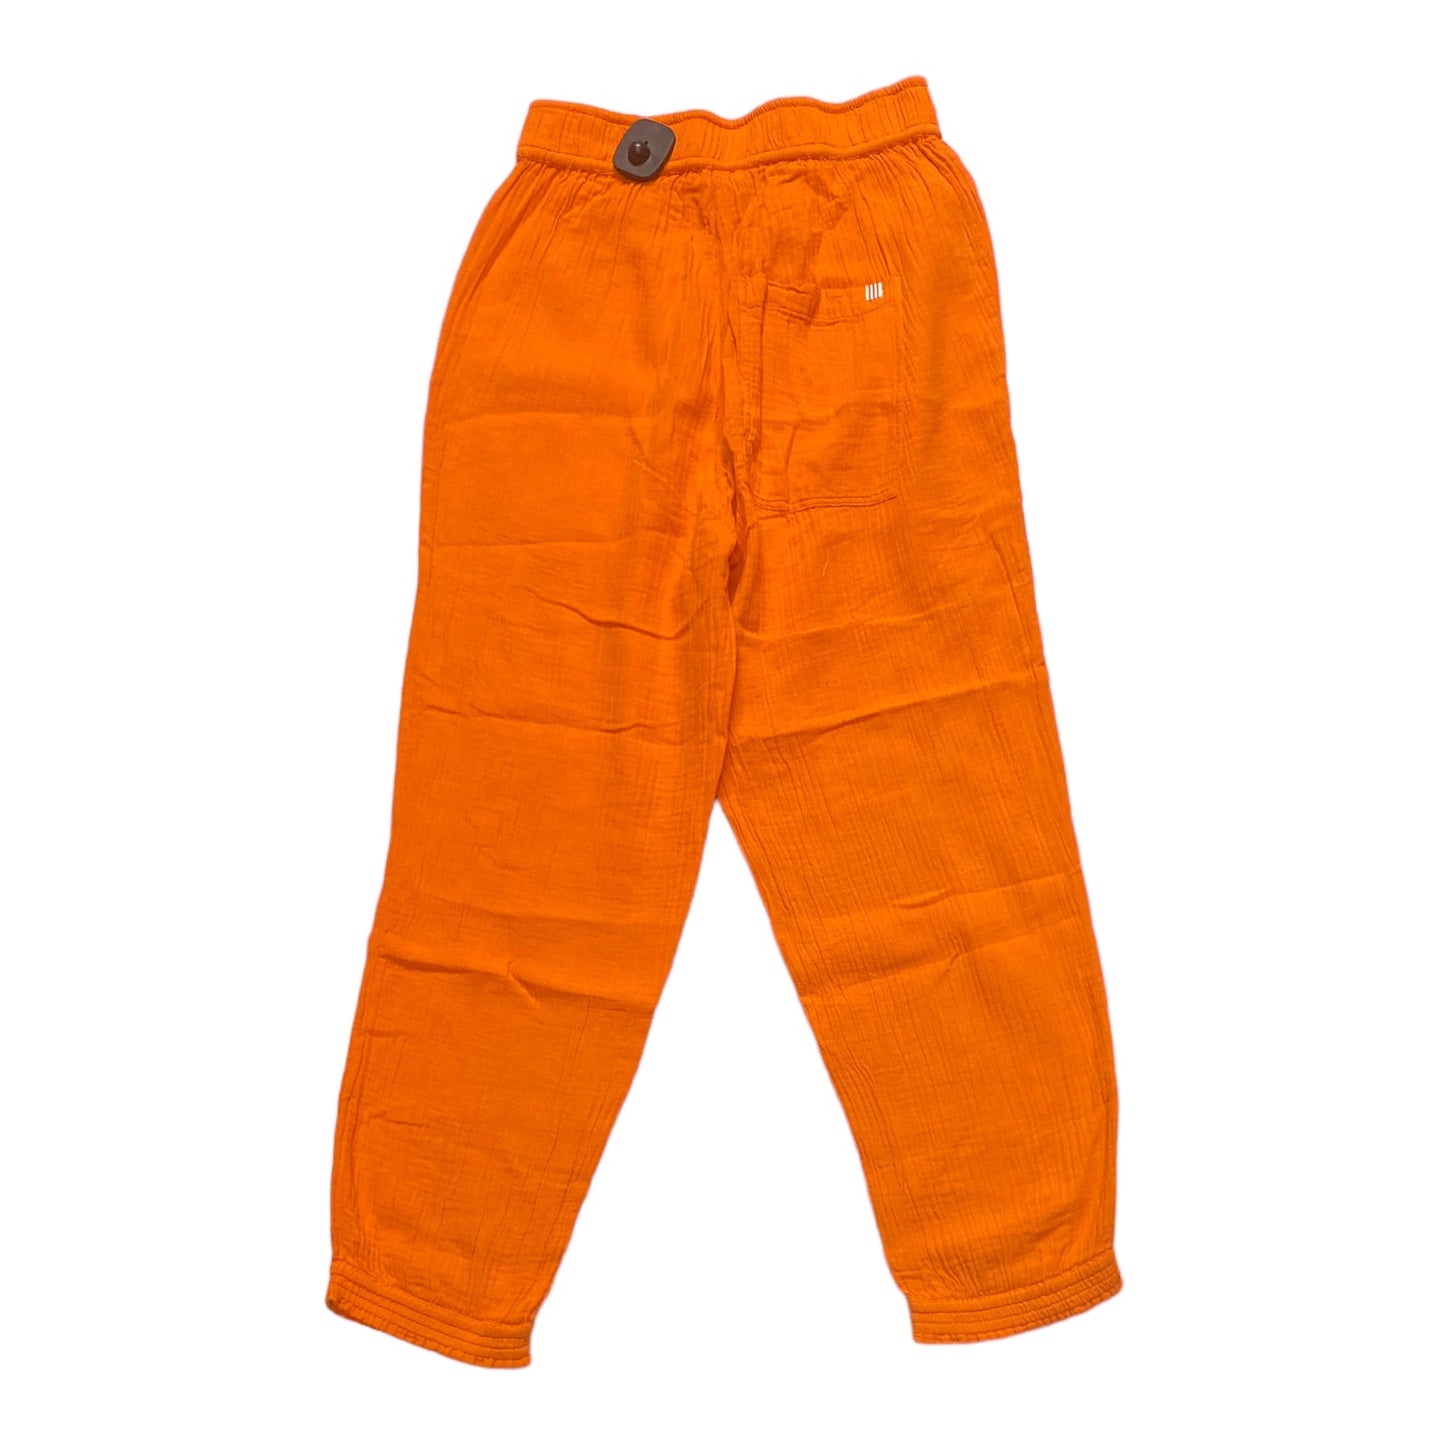 Orange Pants Other Sundry, Size Xs